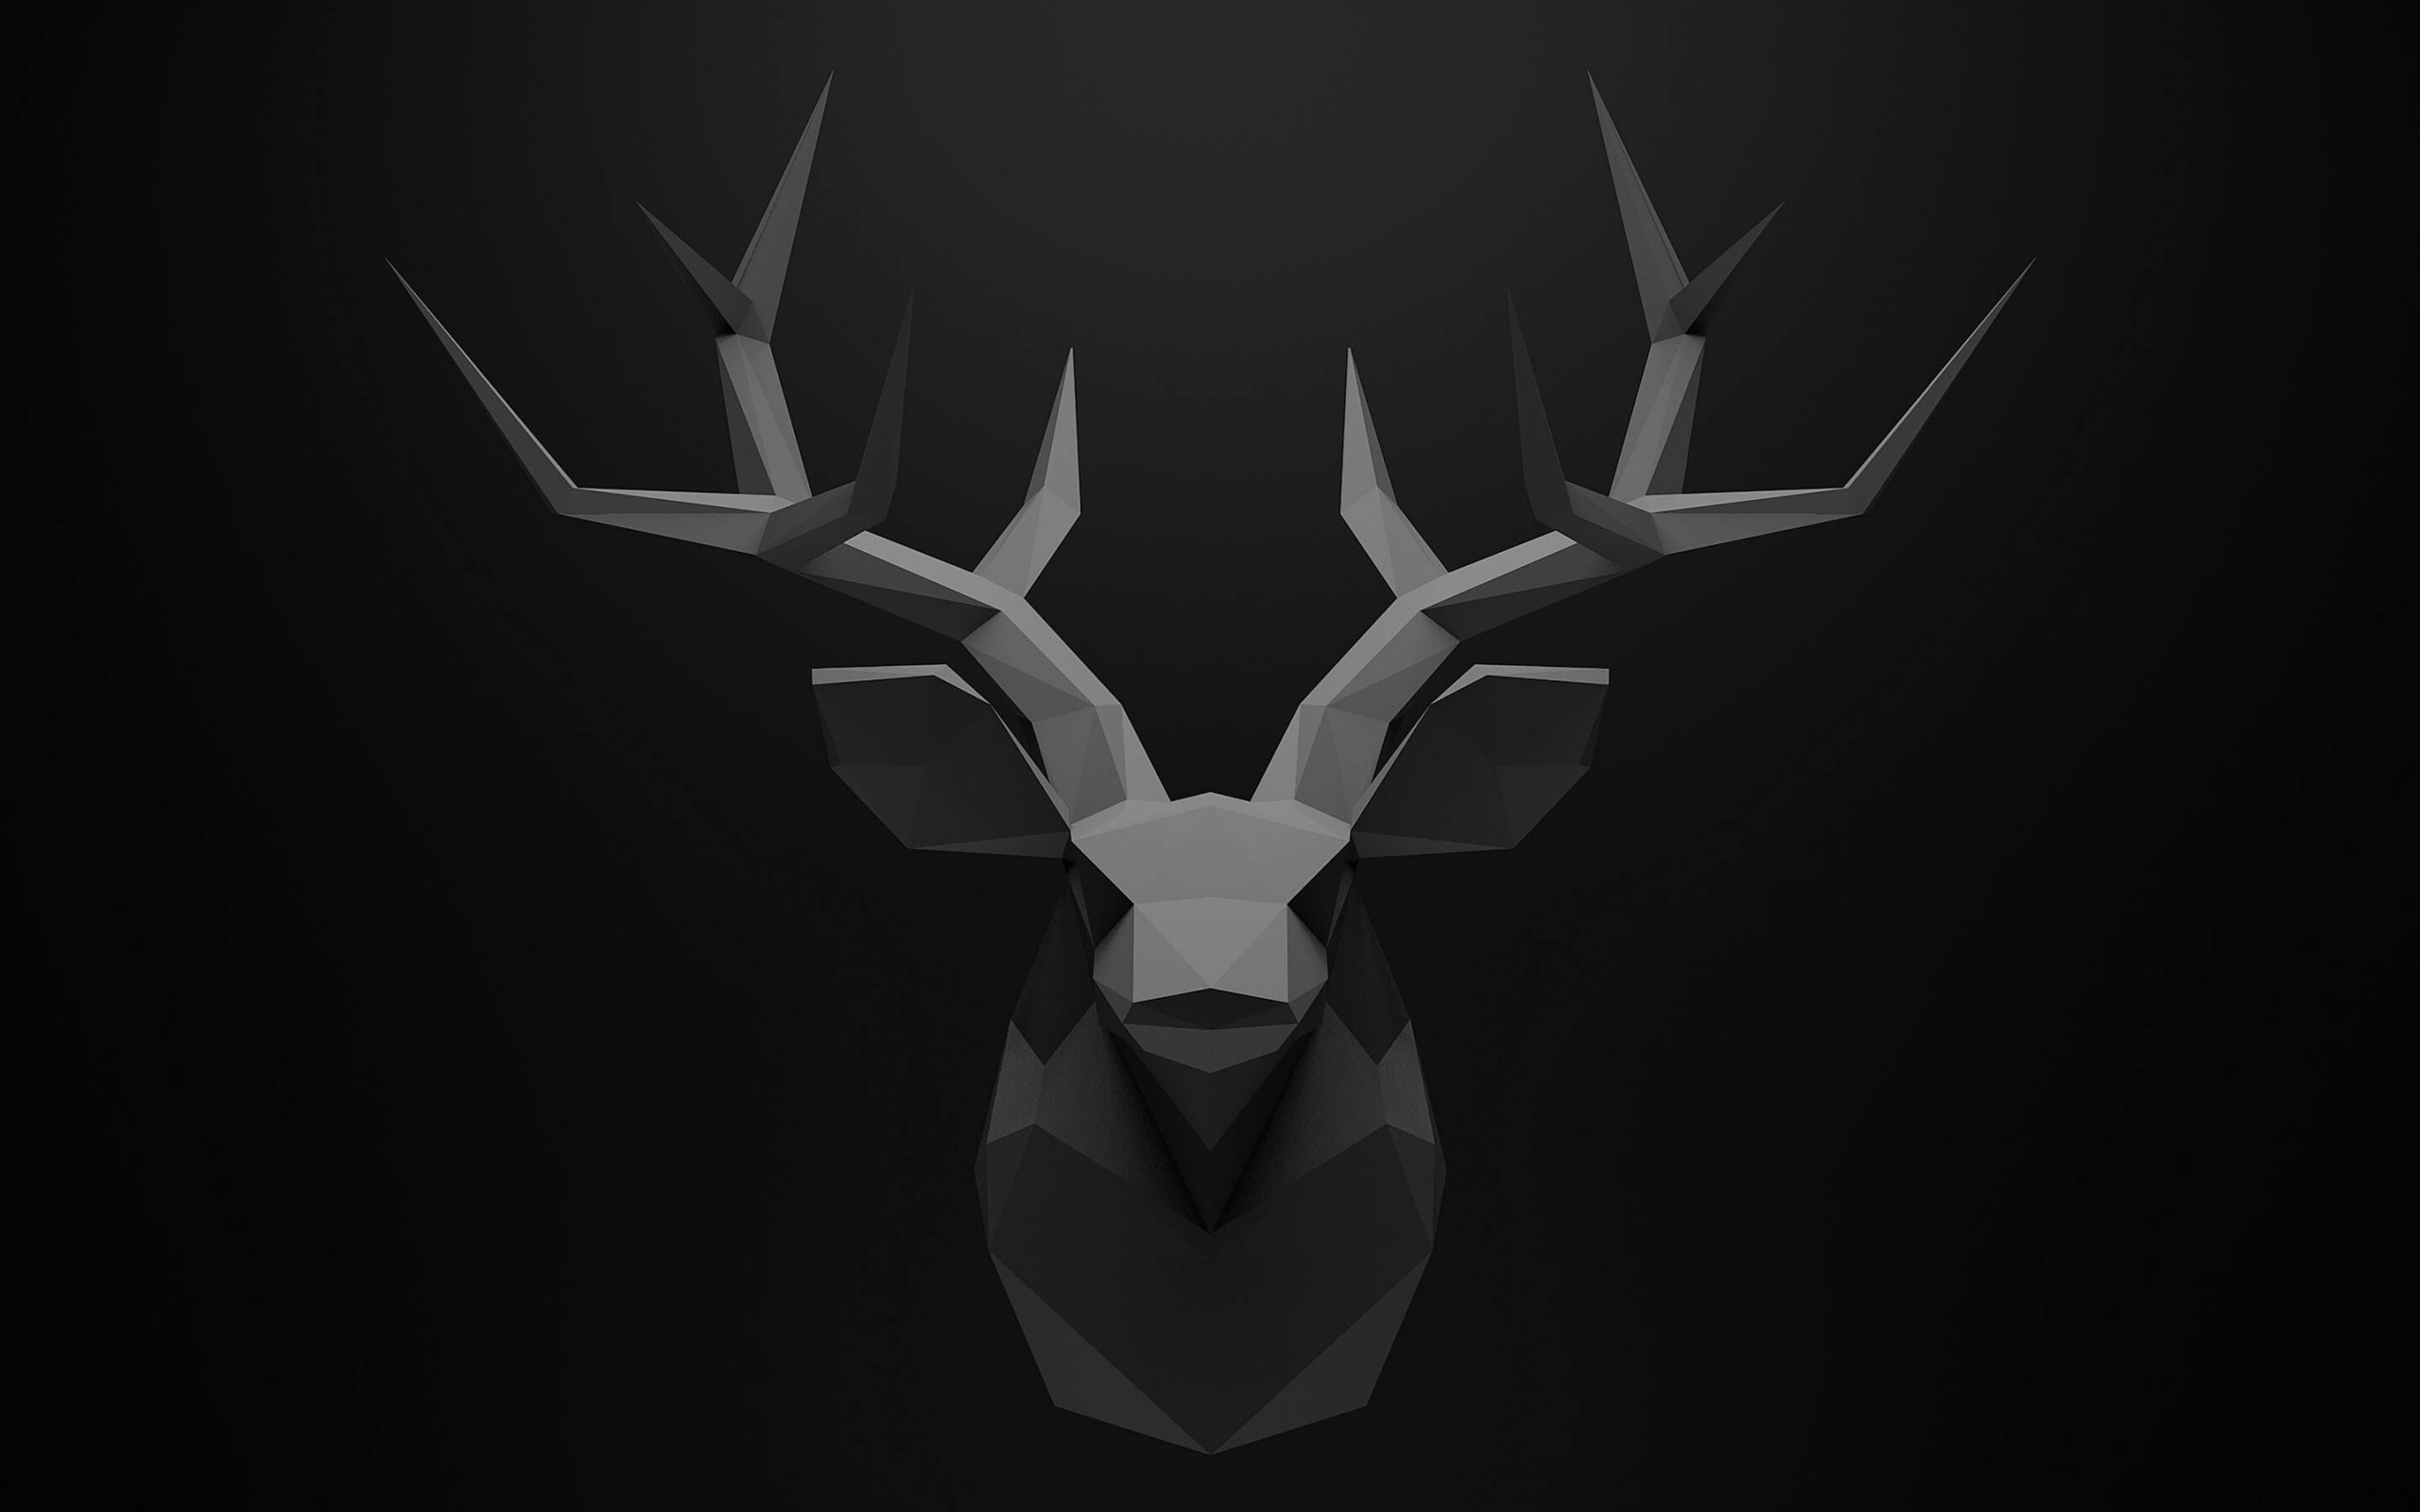 Low Poly Deer Head Wallpaper for Desktop 2560x1600